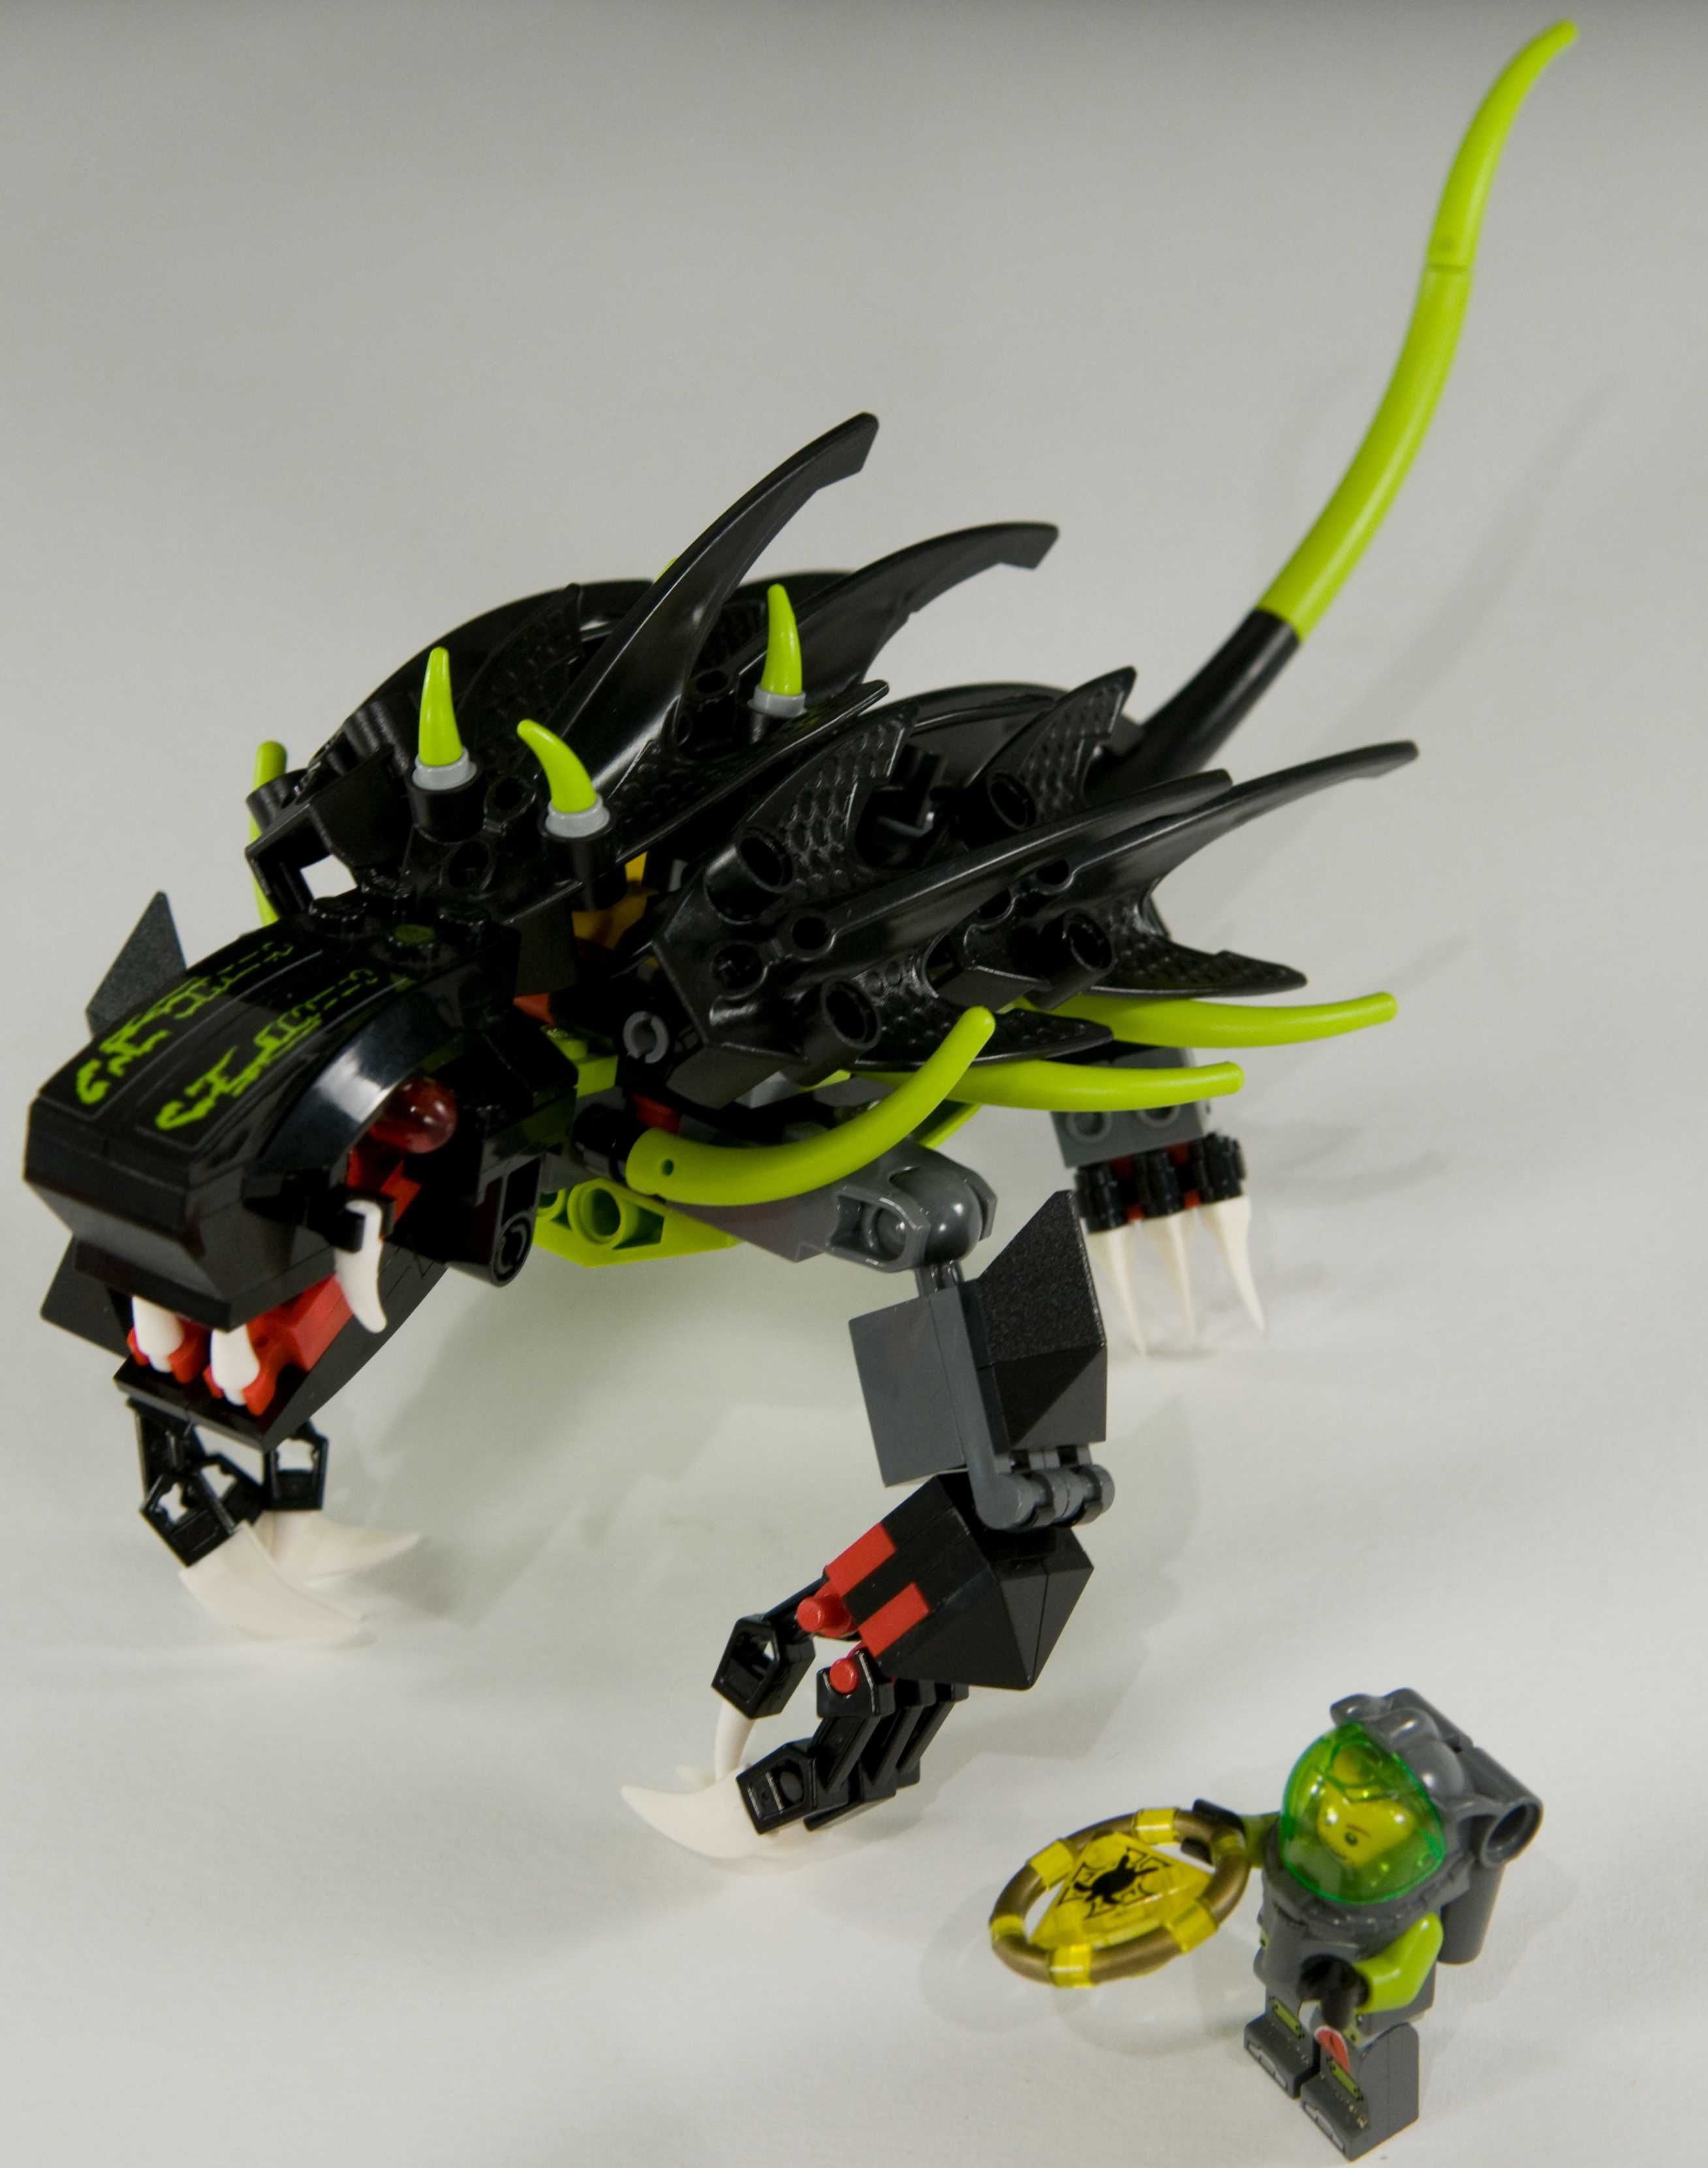 LEGO 8079 Atlantis - Głębinowy potwór